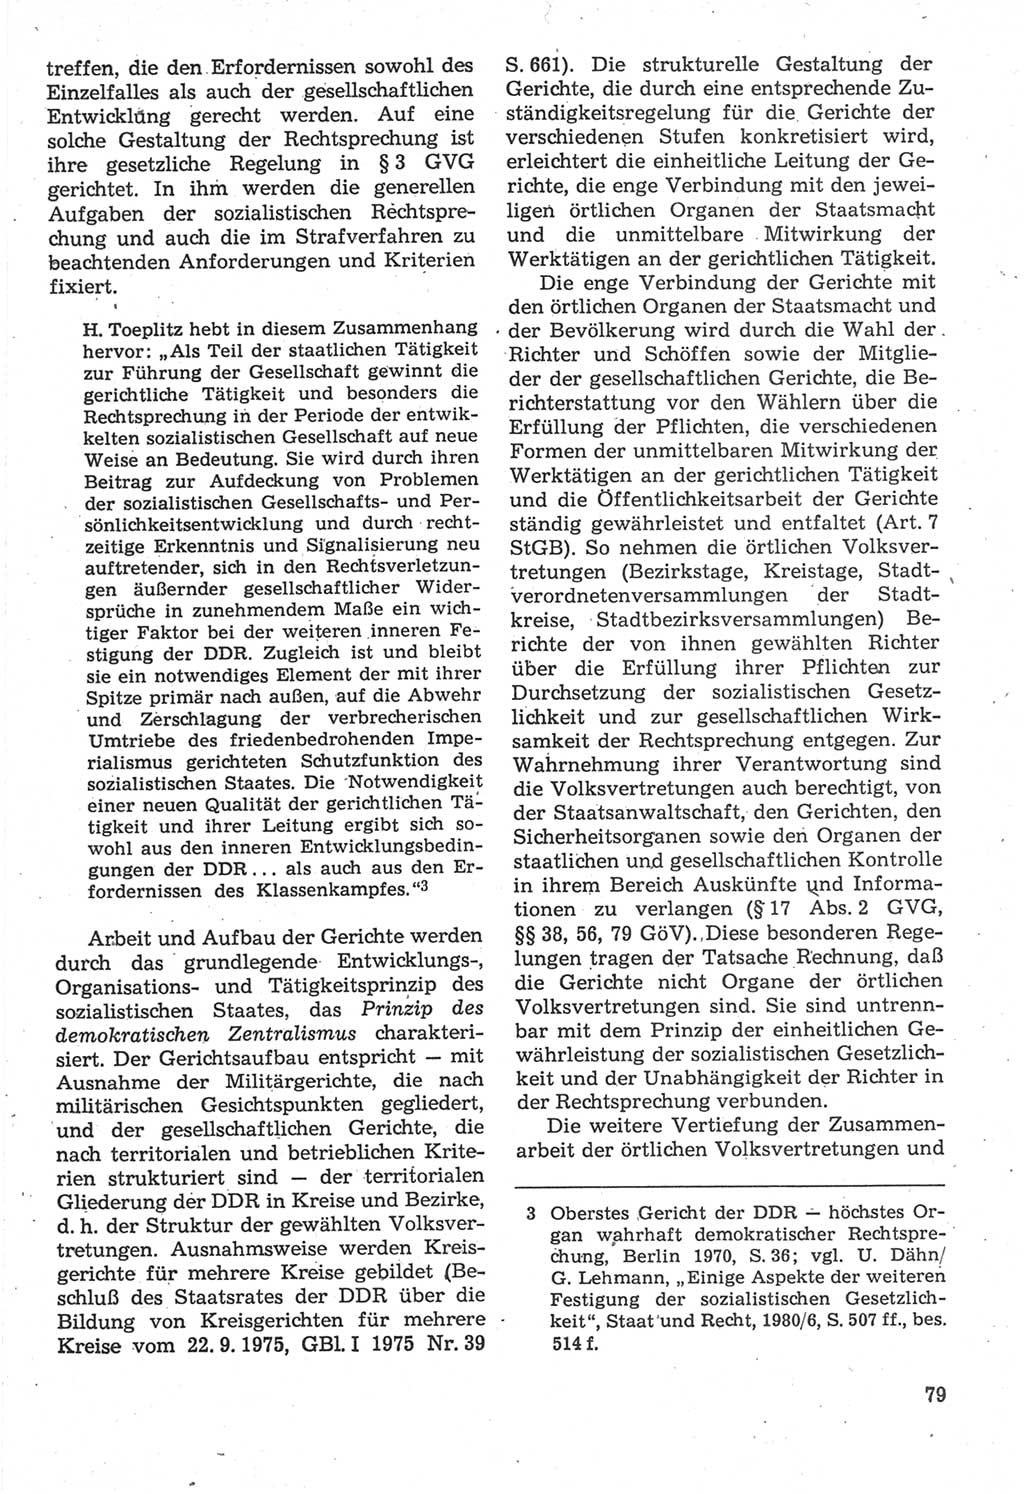 Strafverfahrensrecht [Deutsche Demokratische Republik (DDR)], Lehrbuch 1987, Seite 79 (Strafverf.-R. DDR Lb. 1987, S. 79)